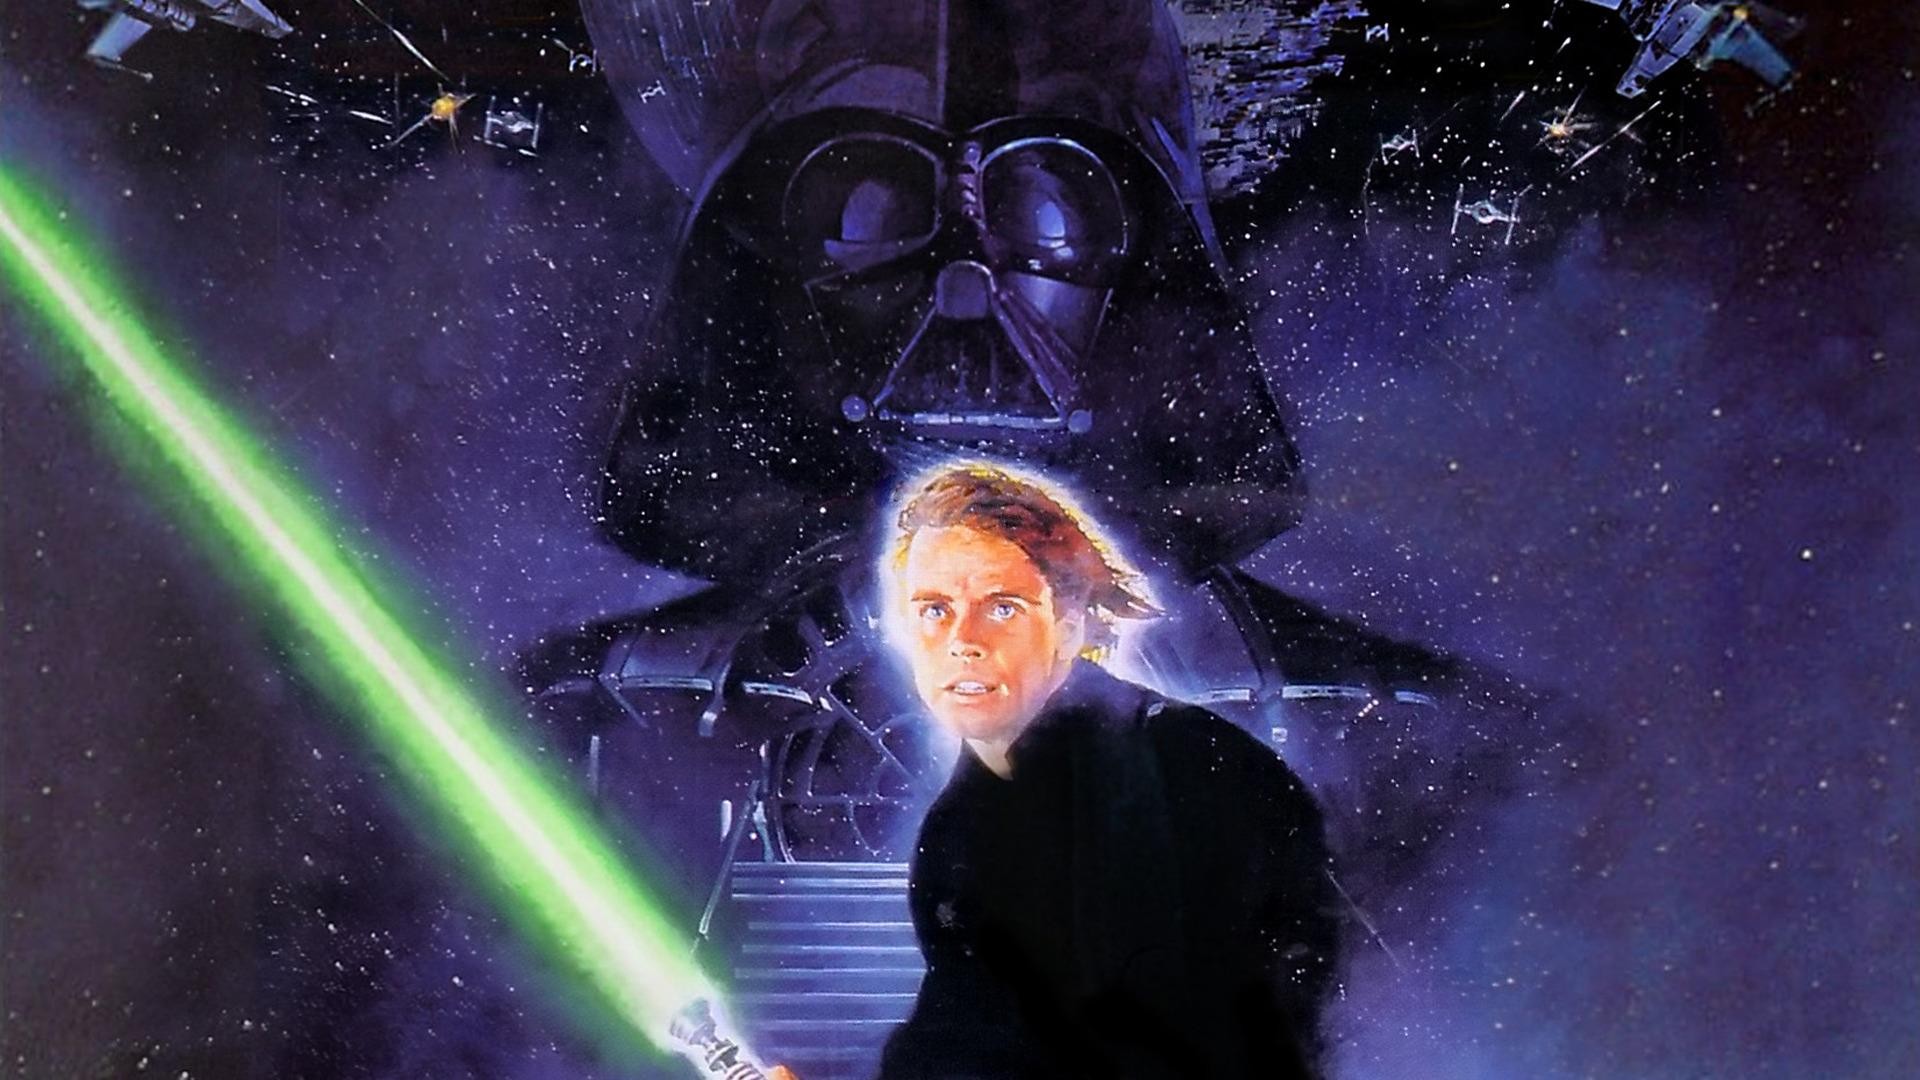 Movies Star Wars Star Wars Episode Vi The Return Of The Jedi Darth Vader Luke Skywalker 1920x1080